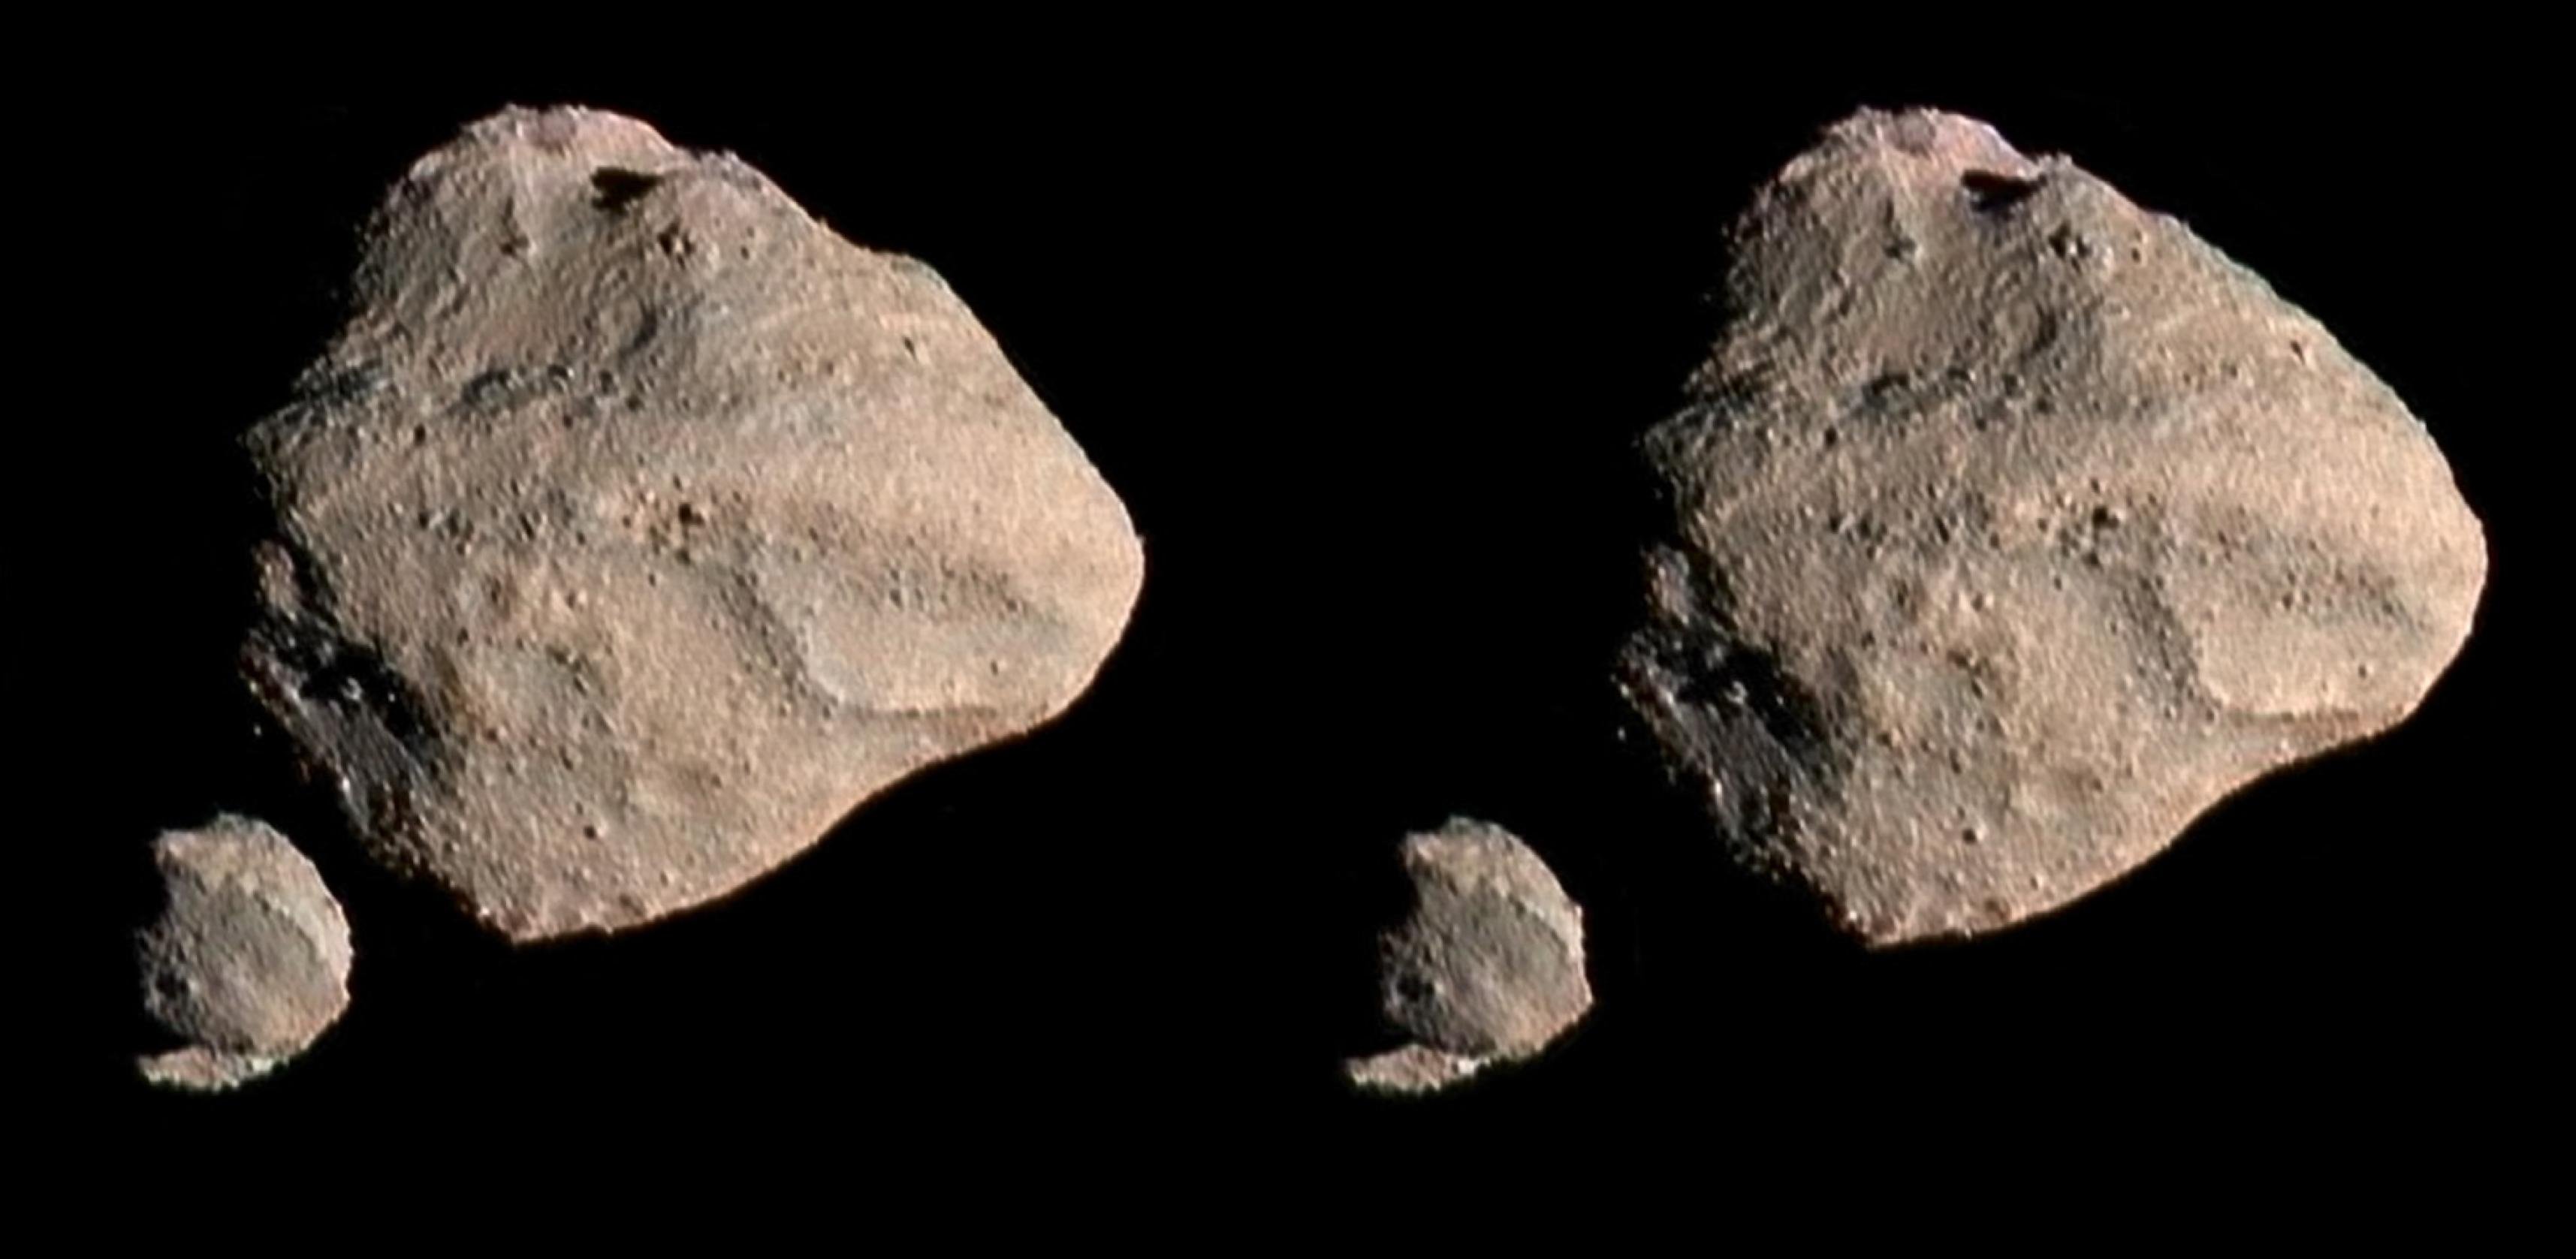 Doppelbild eines kartoffelförmigen Asteroiden mit kleinem Mond vor dem Schwarz des Weltalls. Um einen räumlichen Eindruck zu erleben, betrachtet man das Bild entweder mit einem Stereoskop oder mit auf Unendlich fokussierten Augen, so dass das linke Auge das linke Teilbild, das rechte Auge das rechte Teilbild wahrnimmt.